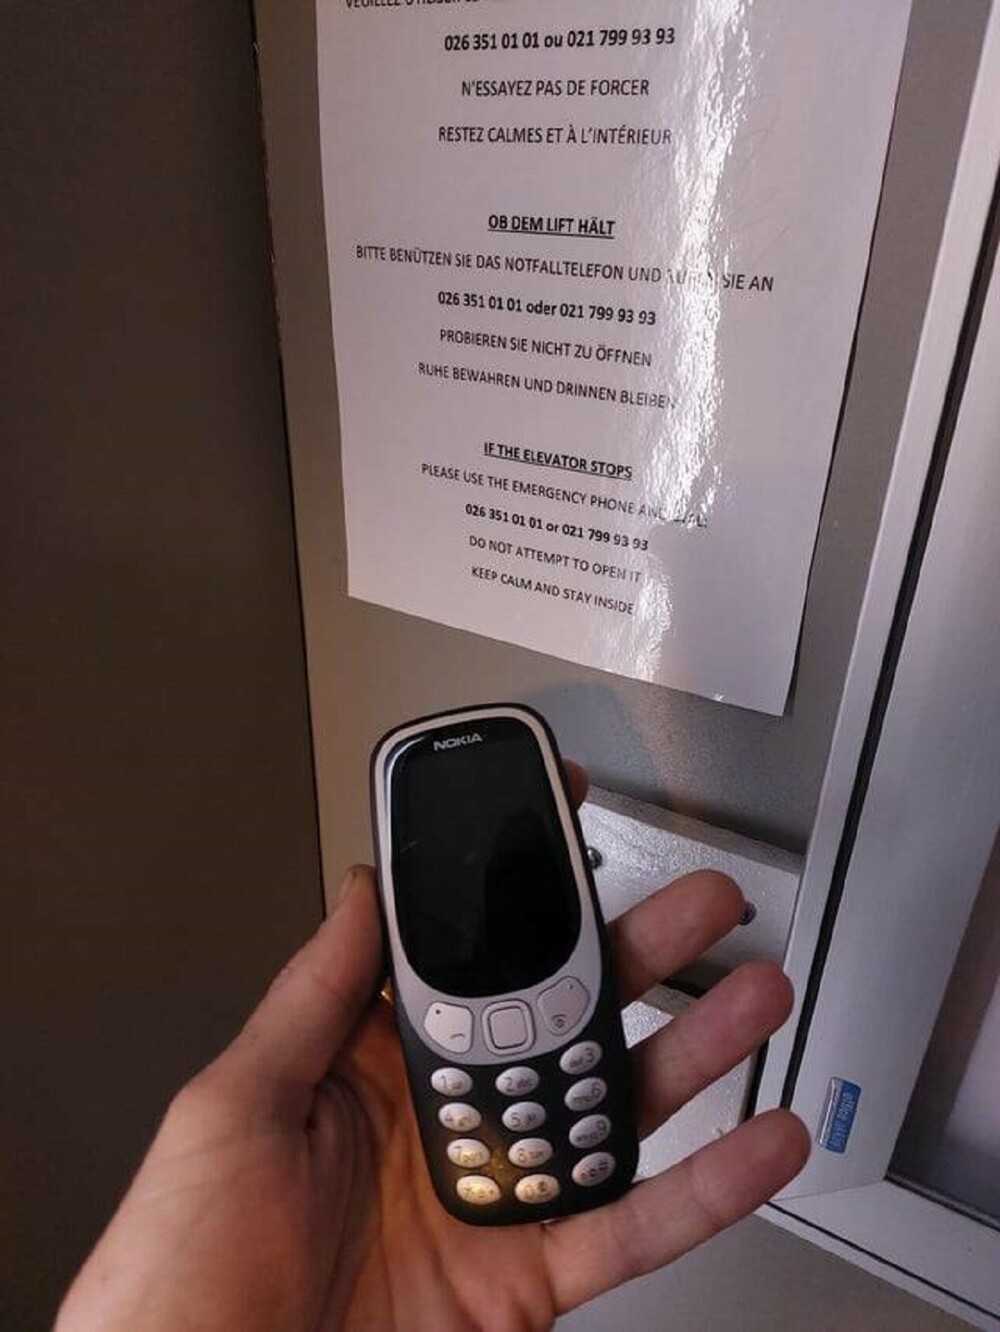 22. "В лифте моего отеля есть аварийный телефон Nokia"